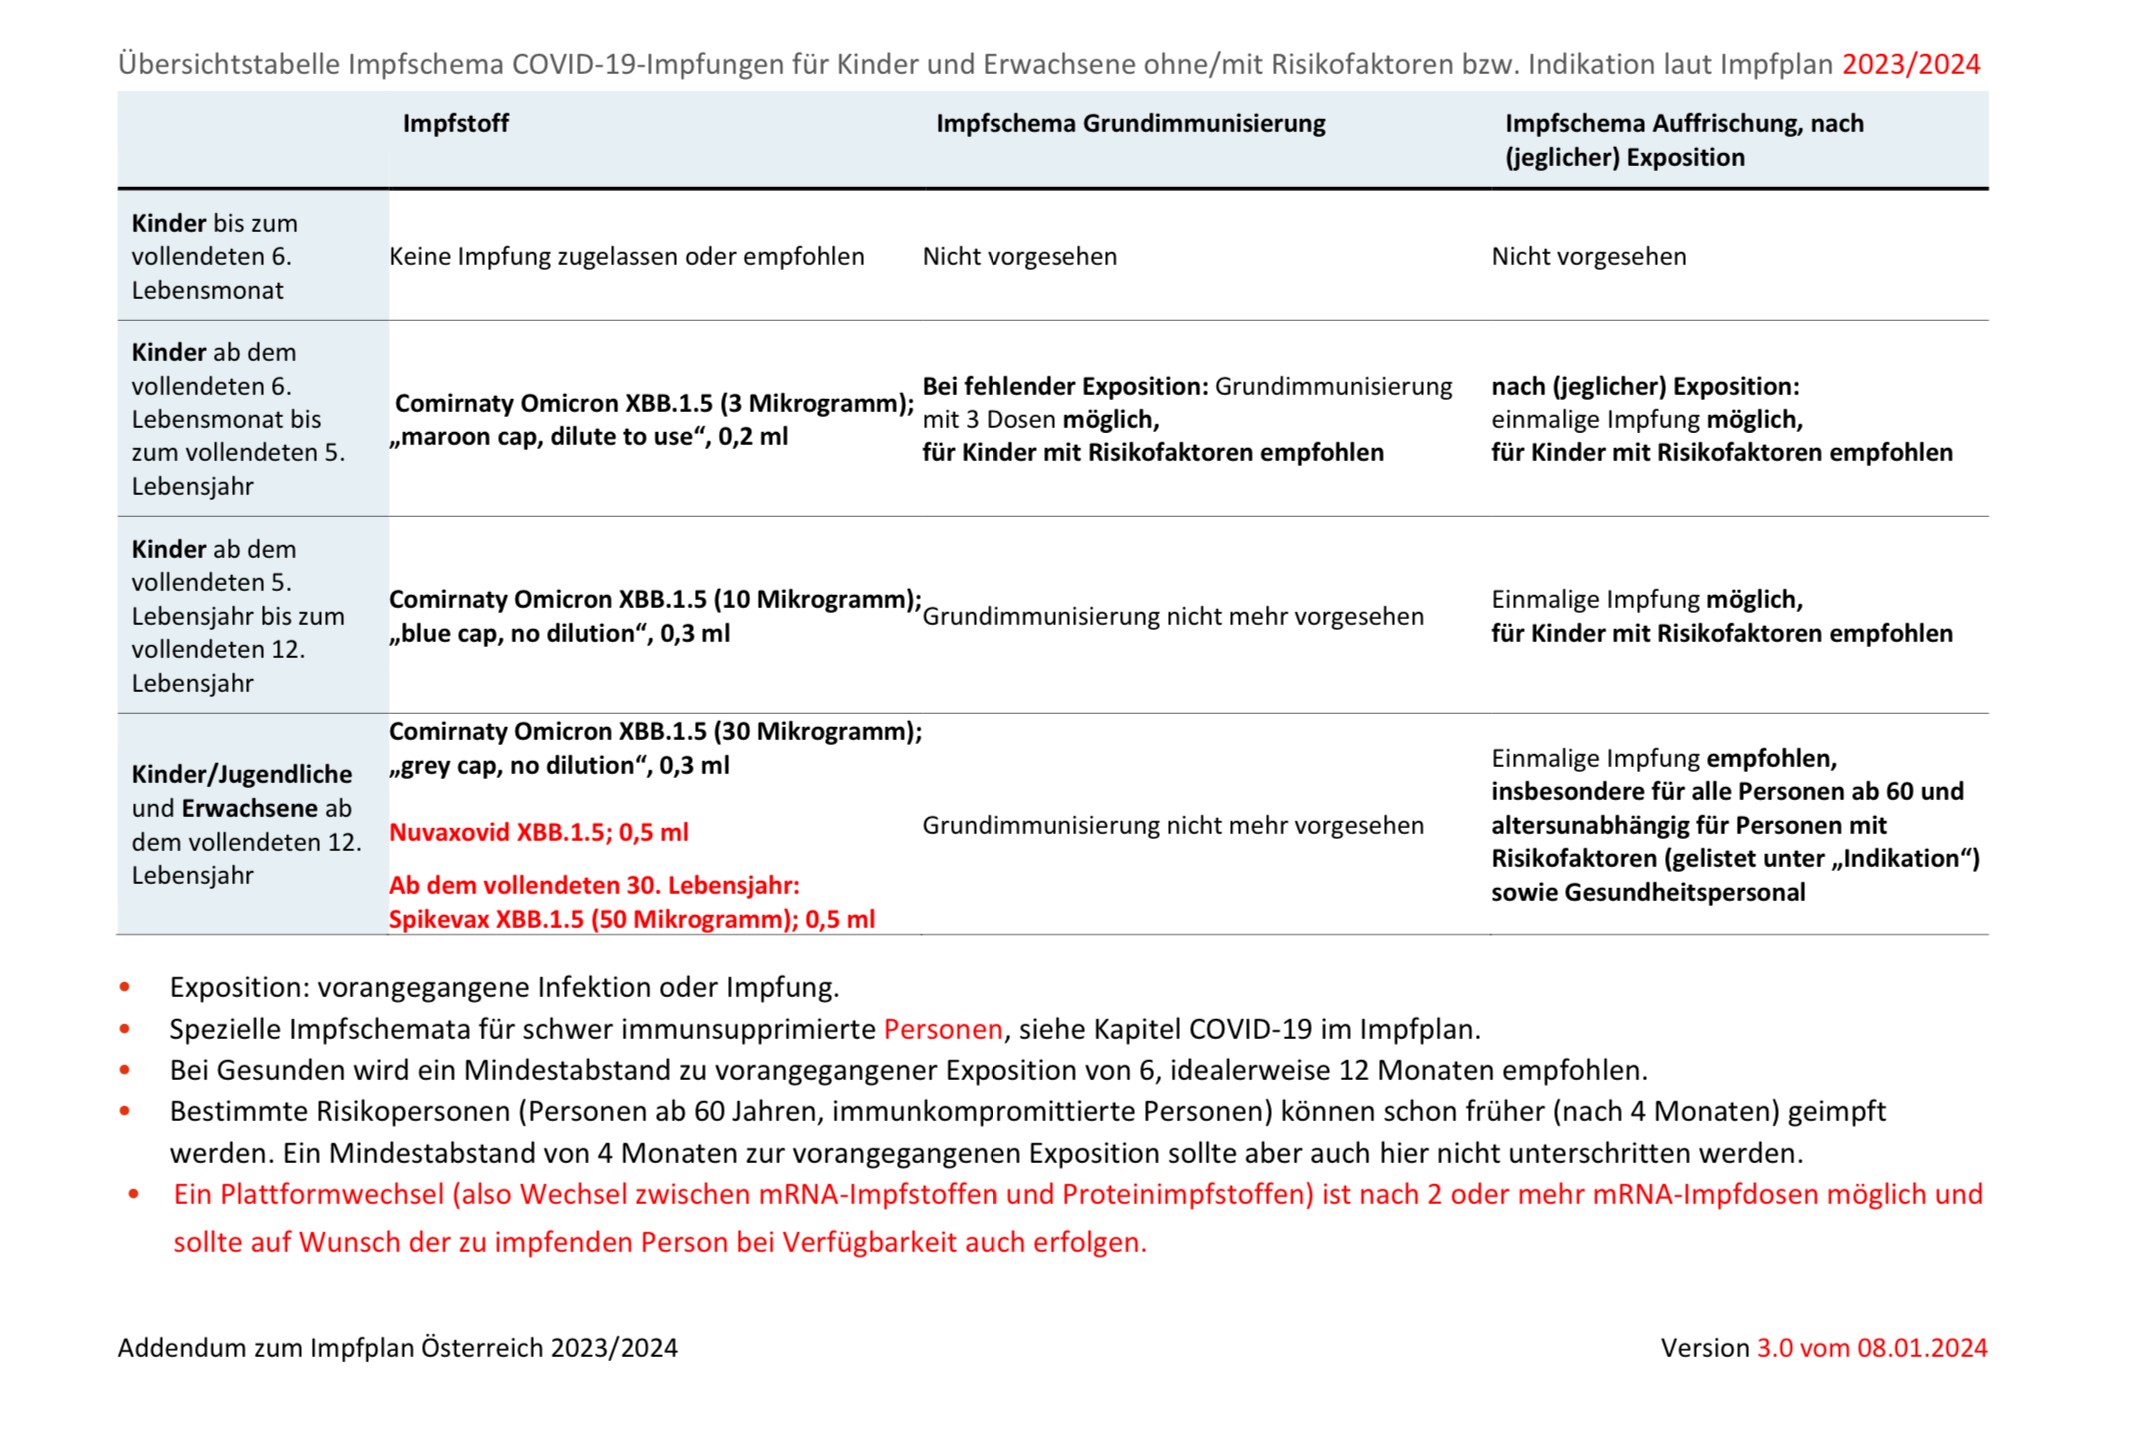 Addendum zum Impfplan Österreich 2023/2024, Version 3.0 vom 08.01.2024